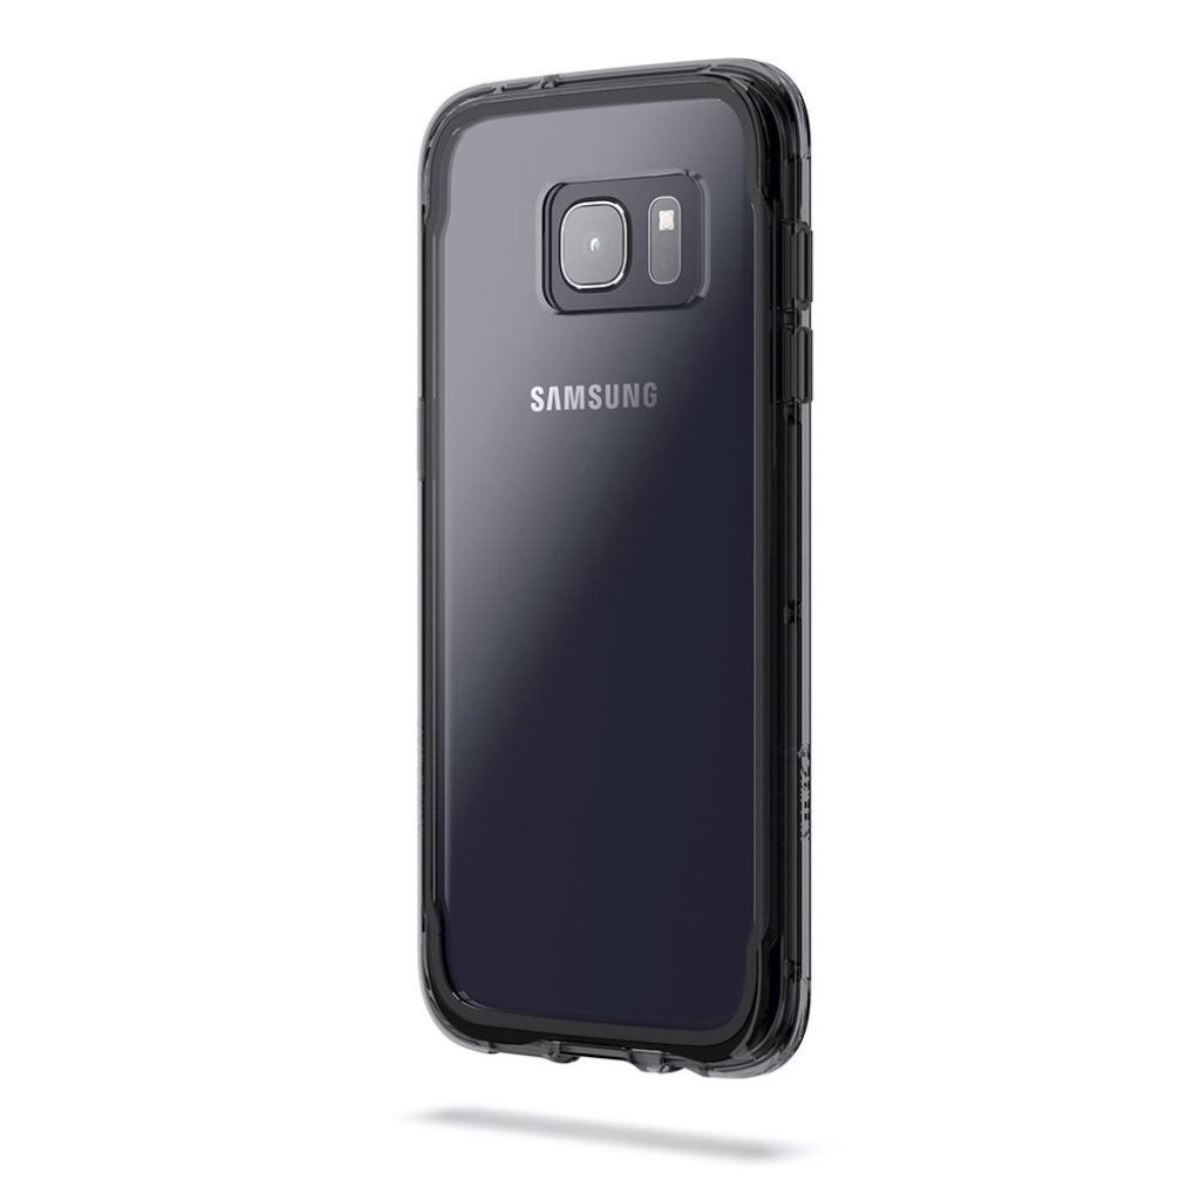 GRIFFIN Survivor Core Slim Rugged Samsung, Backcover, Edge, Schwarz Case, S7 Galaxy